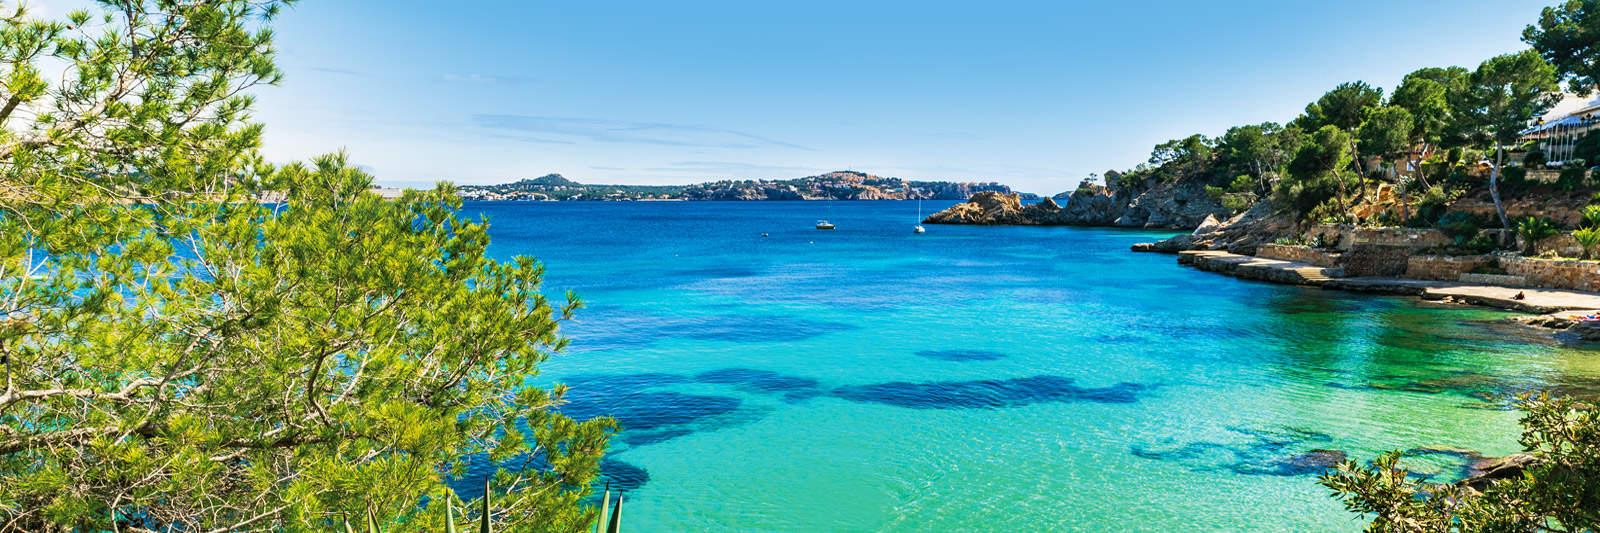 Urlaub im Ferienhaus auf Menorca - tourist-online.de